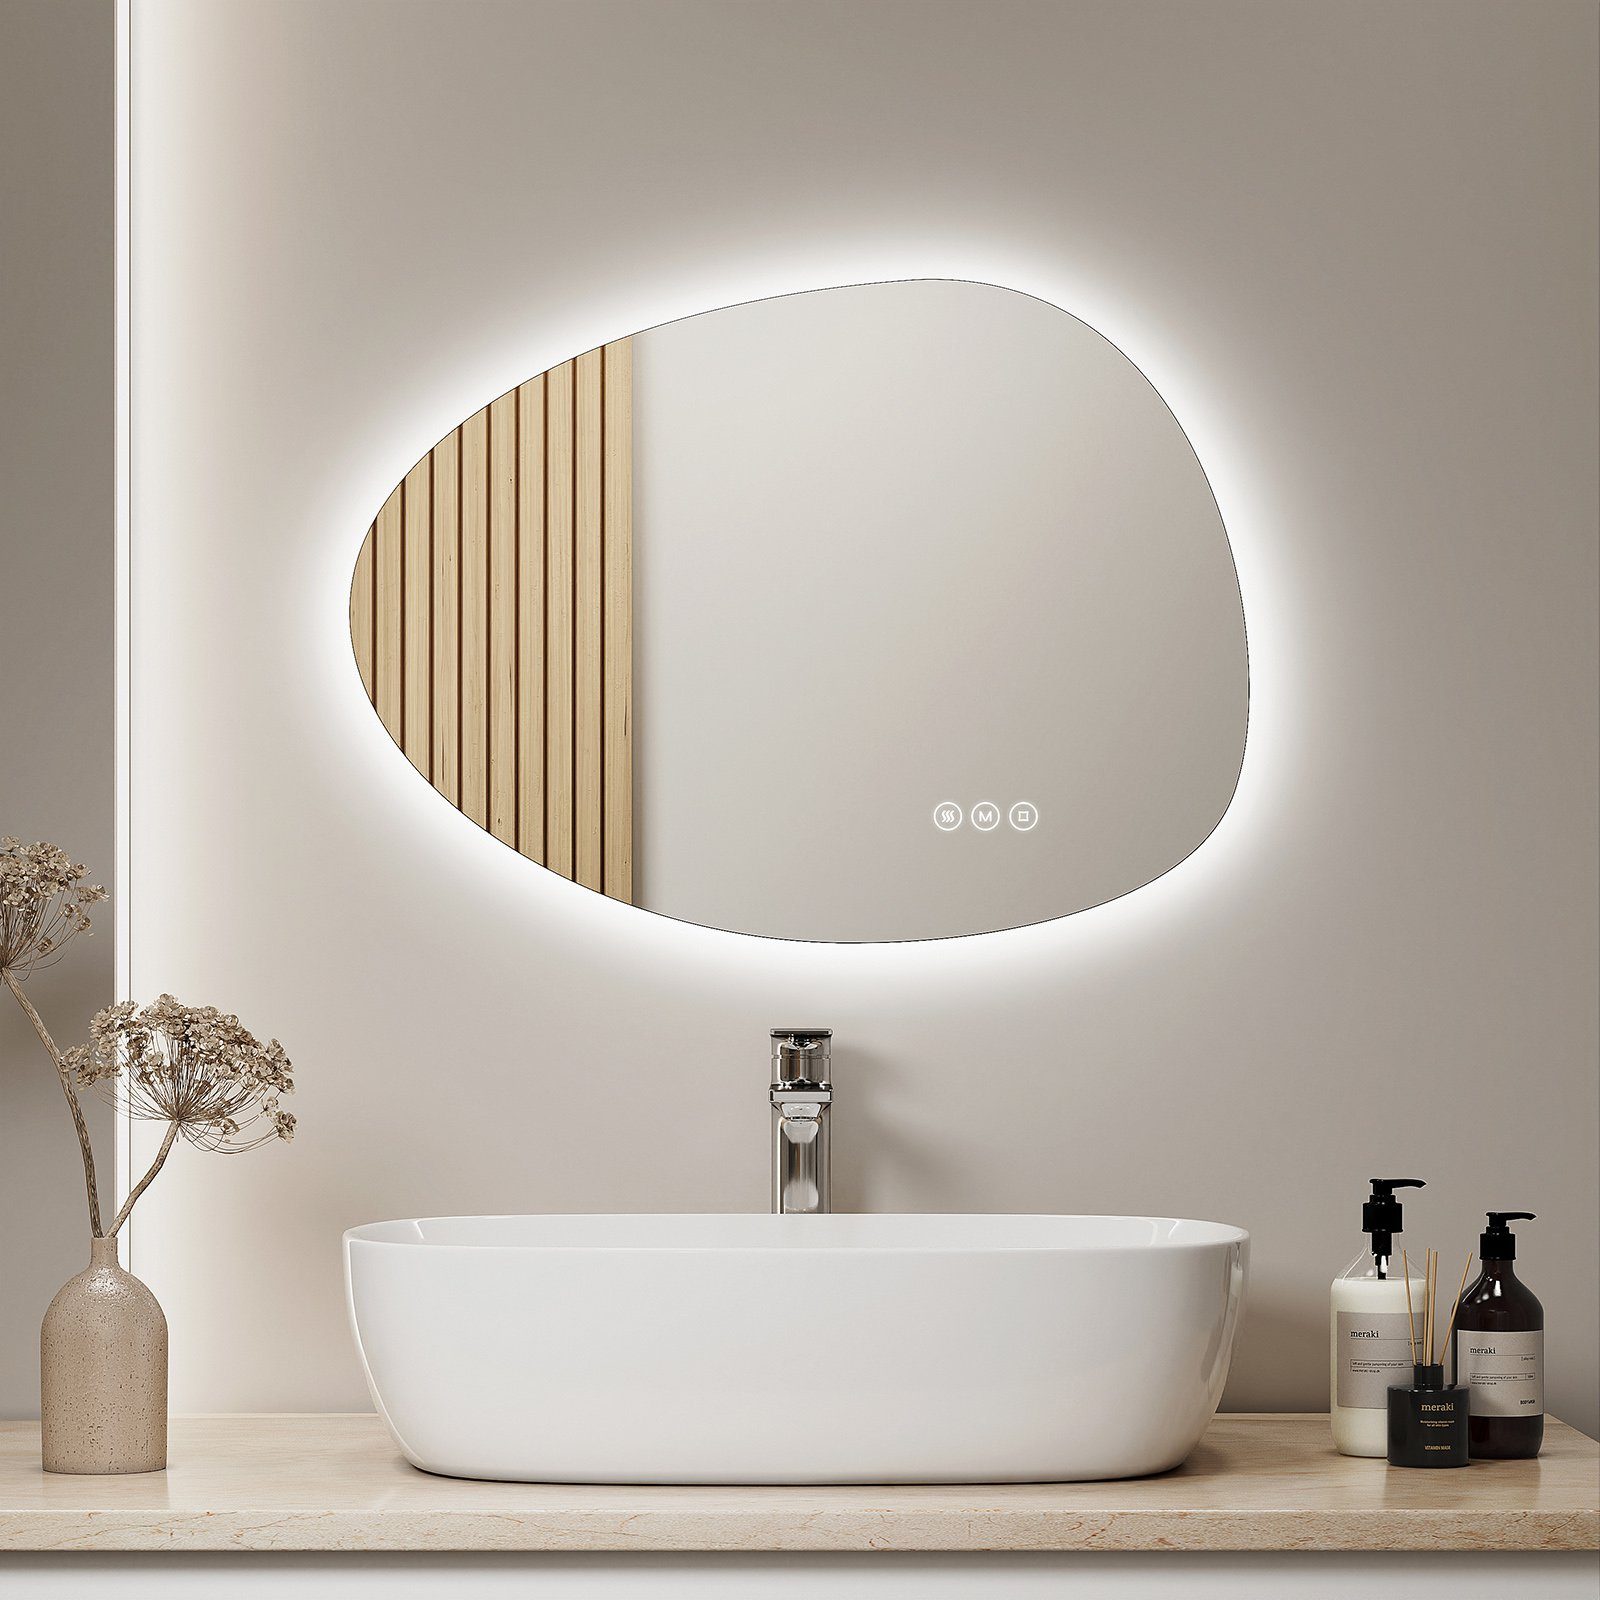 S'AFIELINA Badspiegel mit LED Beleuchtung Wandspiegel 3 Lichtfarben und Dimmbar, Anti-Beschlag- und Memory-Funktion